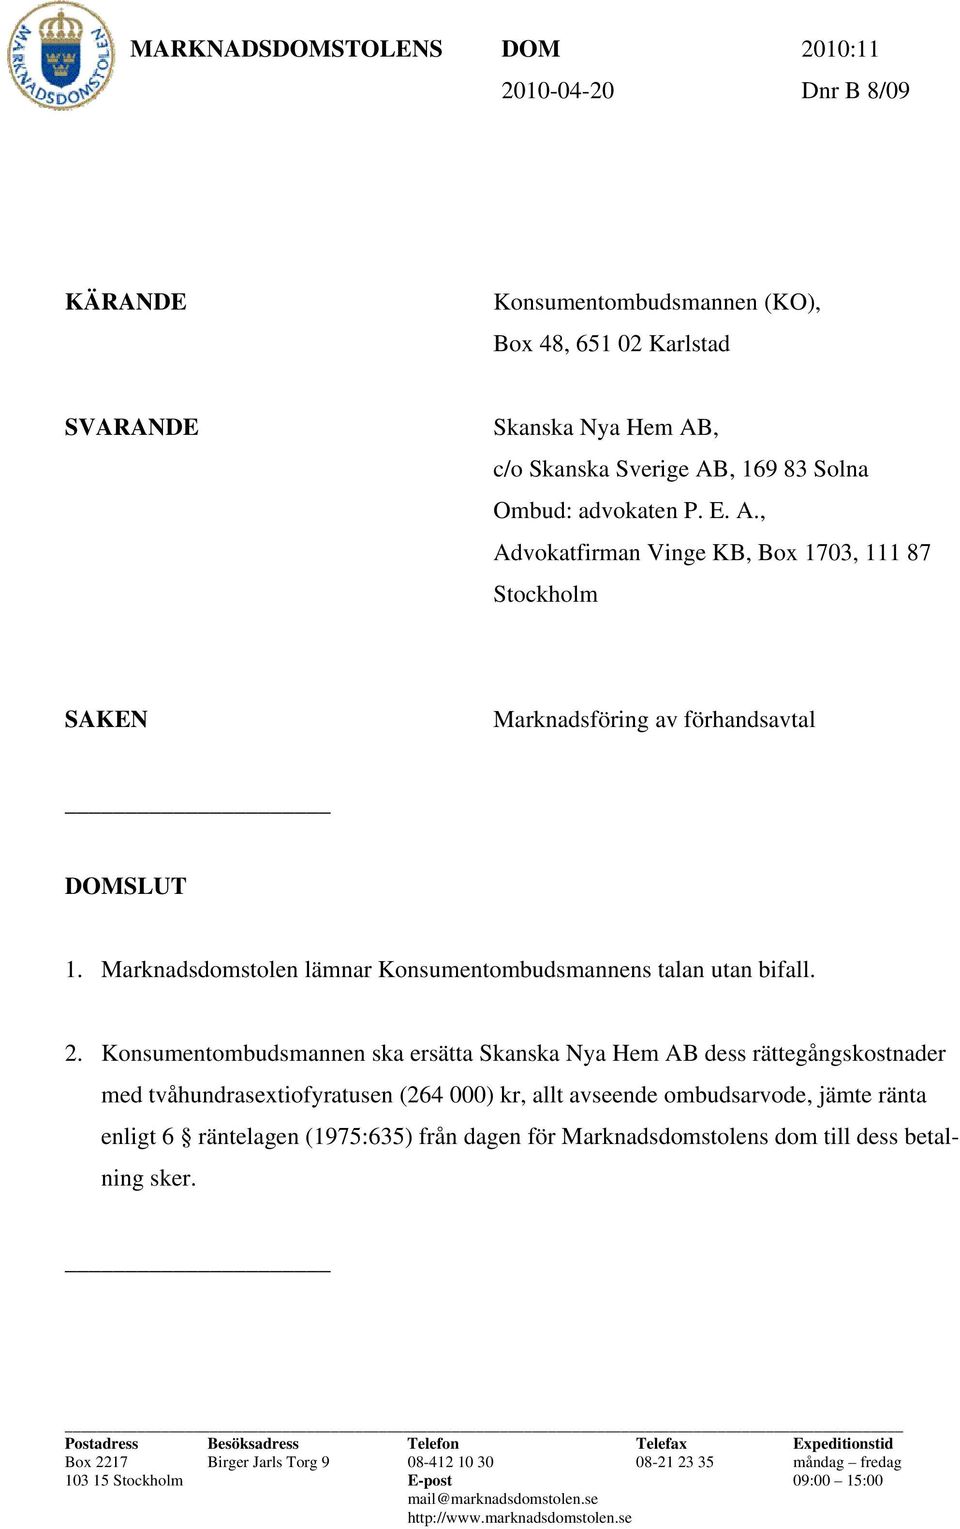 Konsumentombudsmannen ska ersätta Skanska Nya Hem AB dess rättegångskostnader med tvåhundrasextiofyratusen (264 000) kr, allt avseende ombudsarvode, jämte ränta enligt 6 räntelagen (1975:635) från